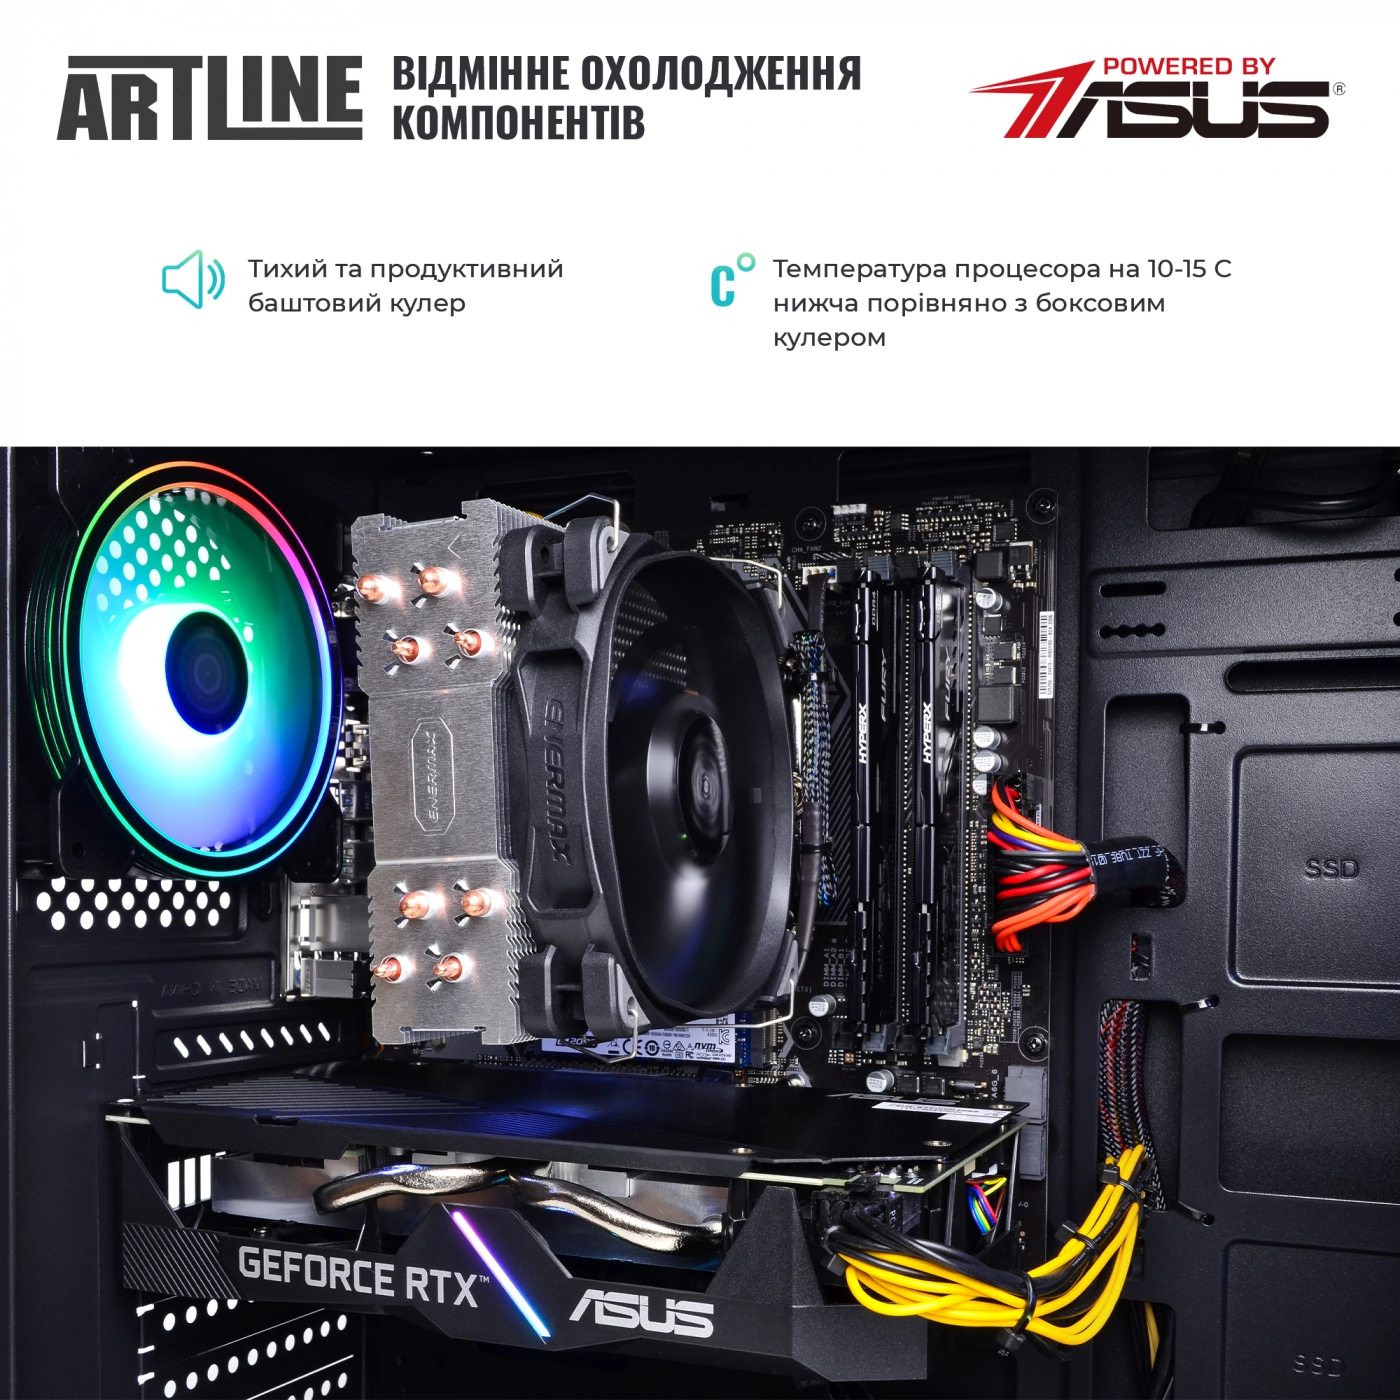 Купить Компьютер ARTLINE Gaming X68v22 - фото 7